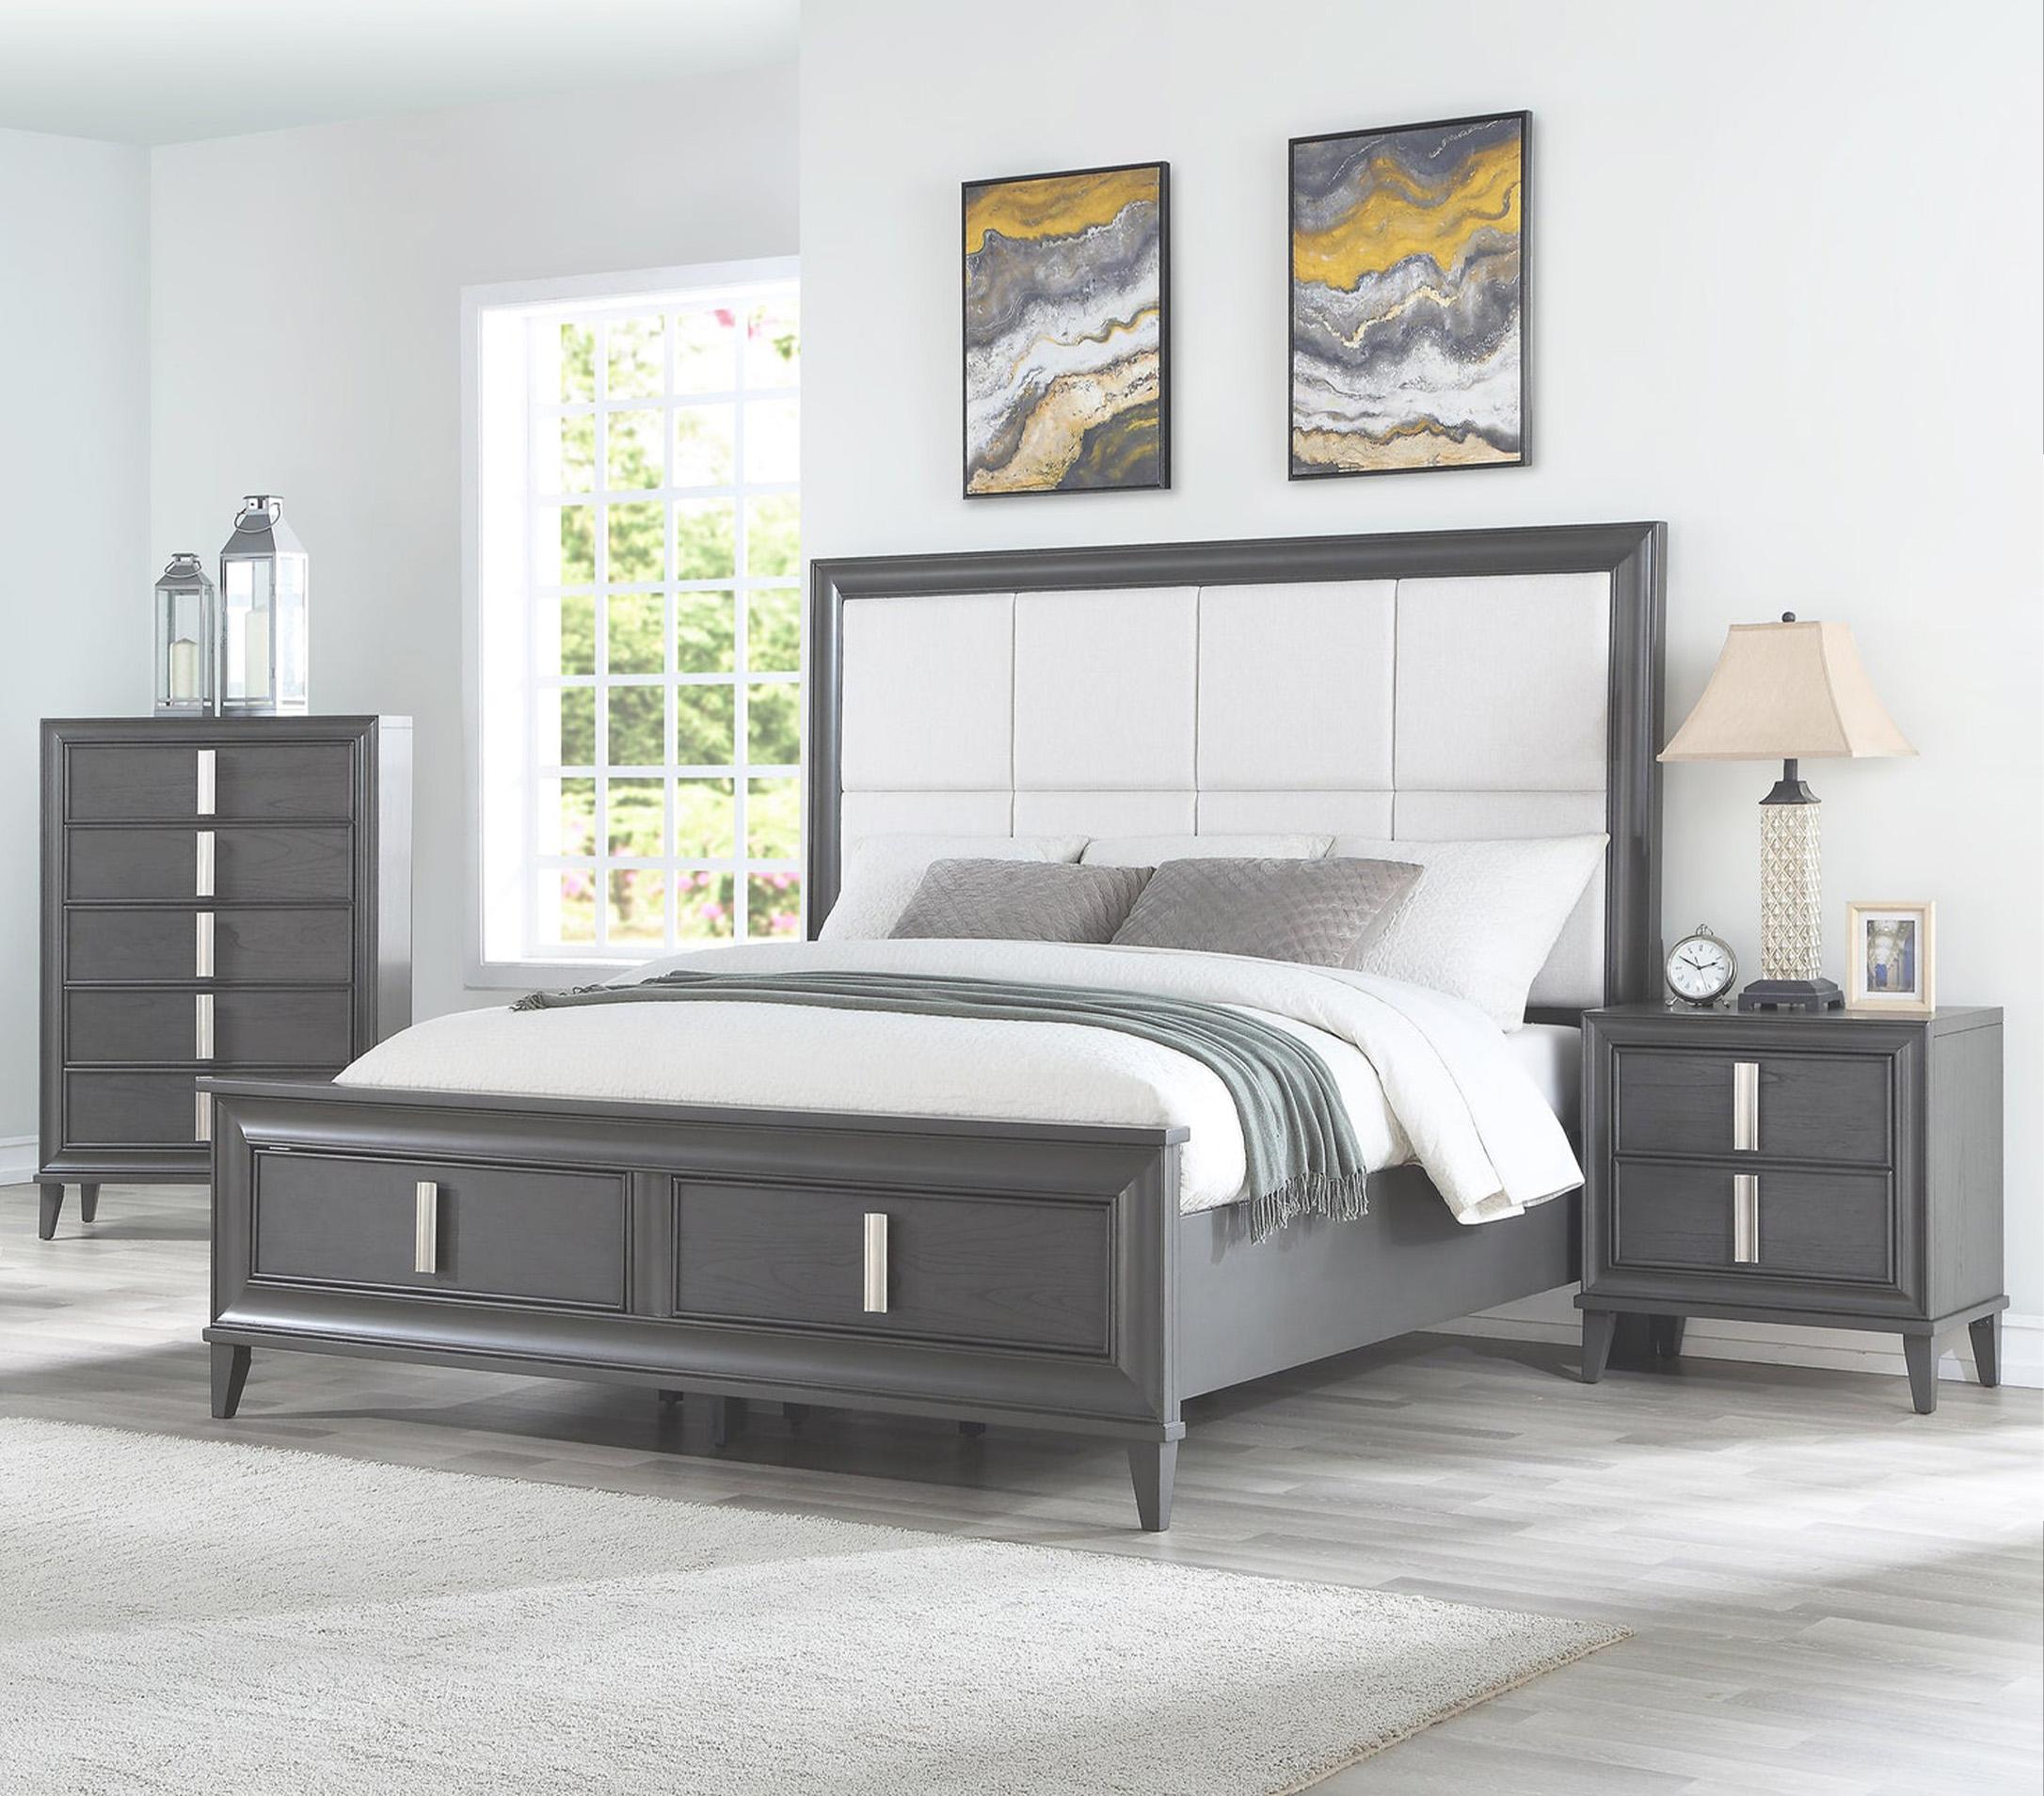 Contemporary, Modern Storage Bedroom Set LORRAINE 8171-07CK-Set-3 in Dark Gray, Cream Fabric